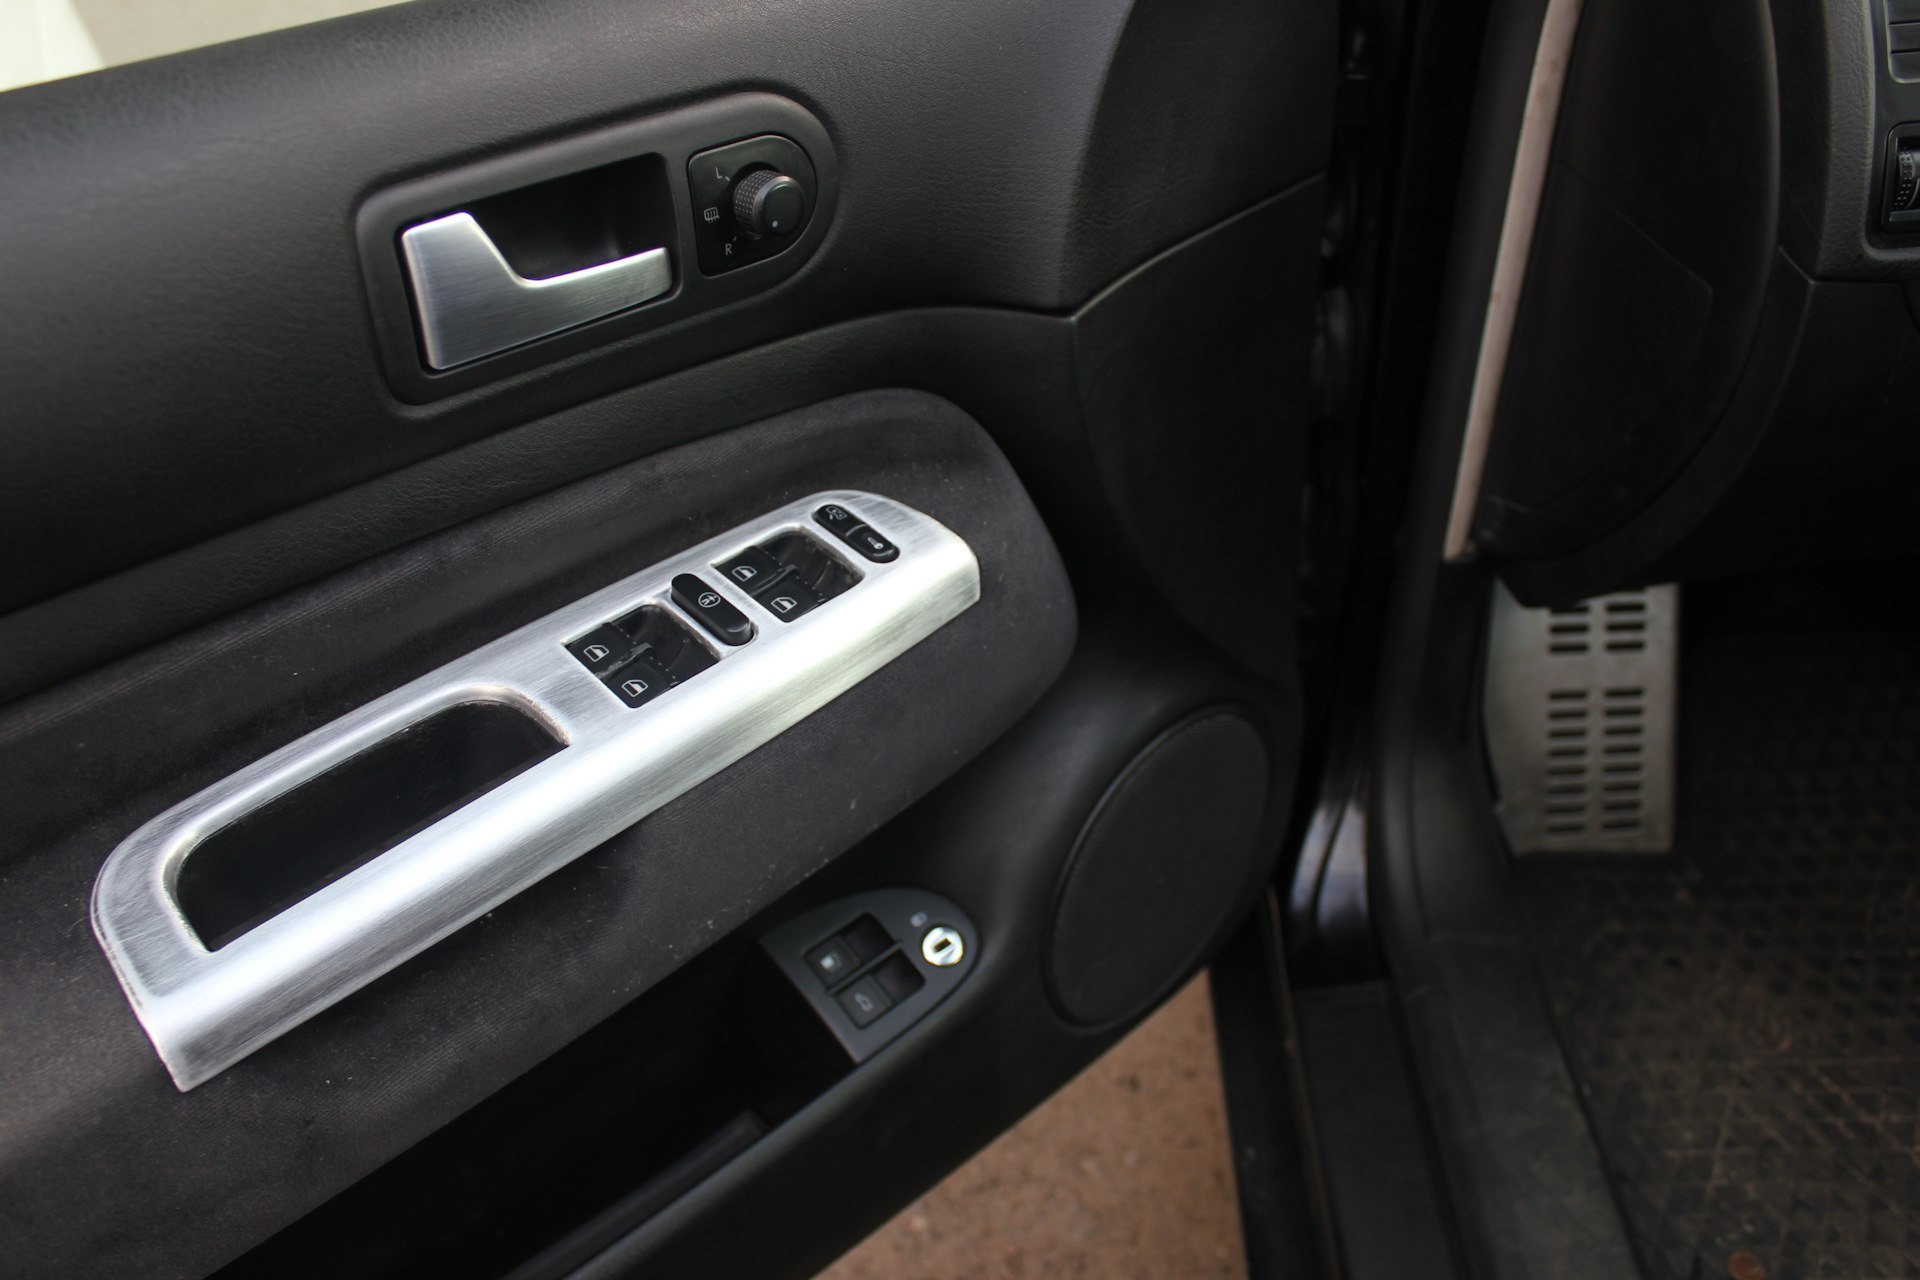 Накладка на водительскую дверь. Усилитель накладки водительской двери Peugeot 107 ручки. Subaru накладка бардачек 090306 001-03. Накладка алюминий. Алюминиевая накладка на дверь.